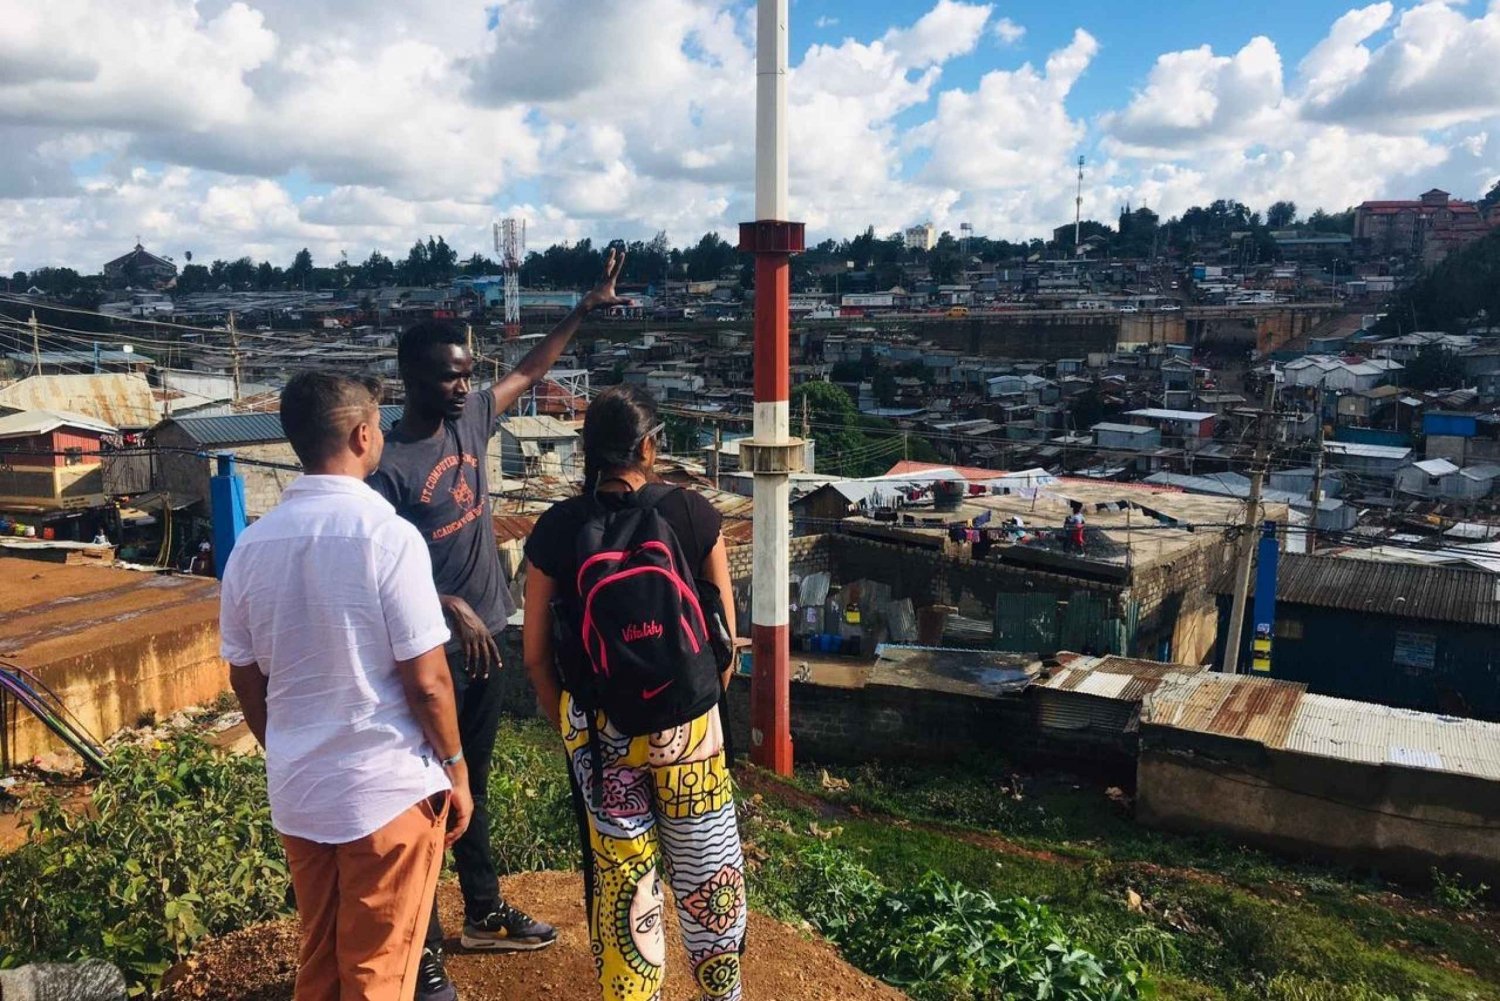 omvisning i den pulserende slummen i Kibera